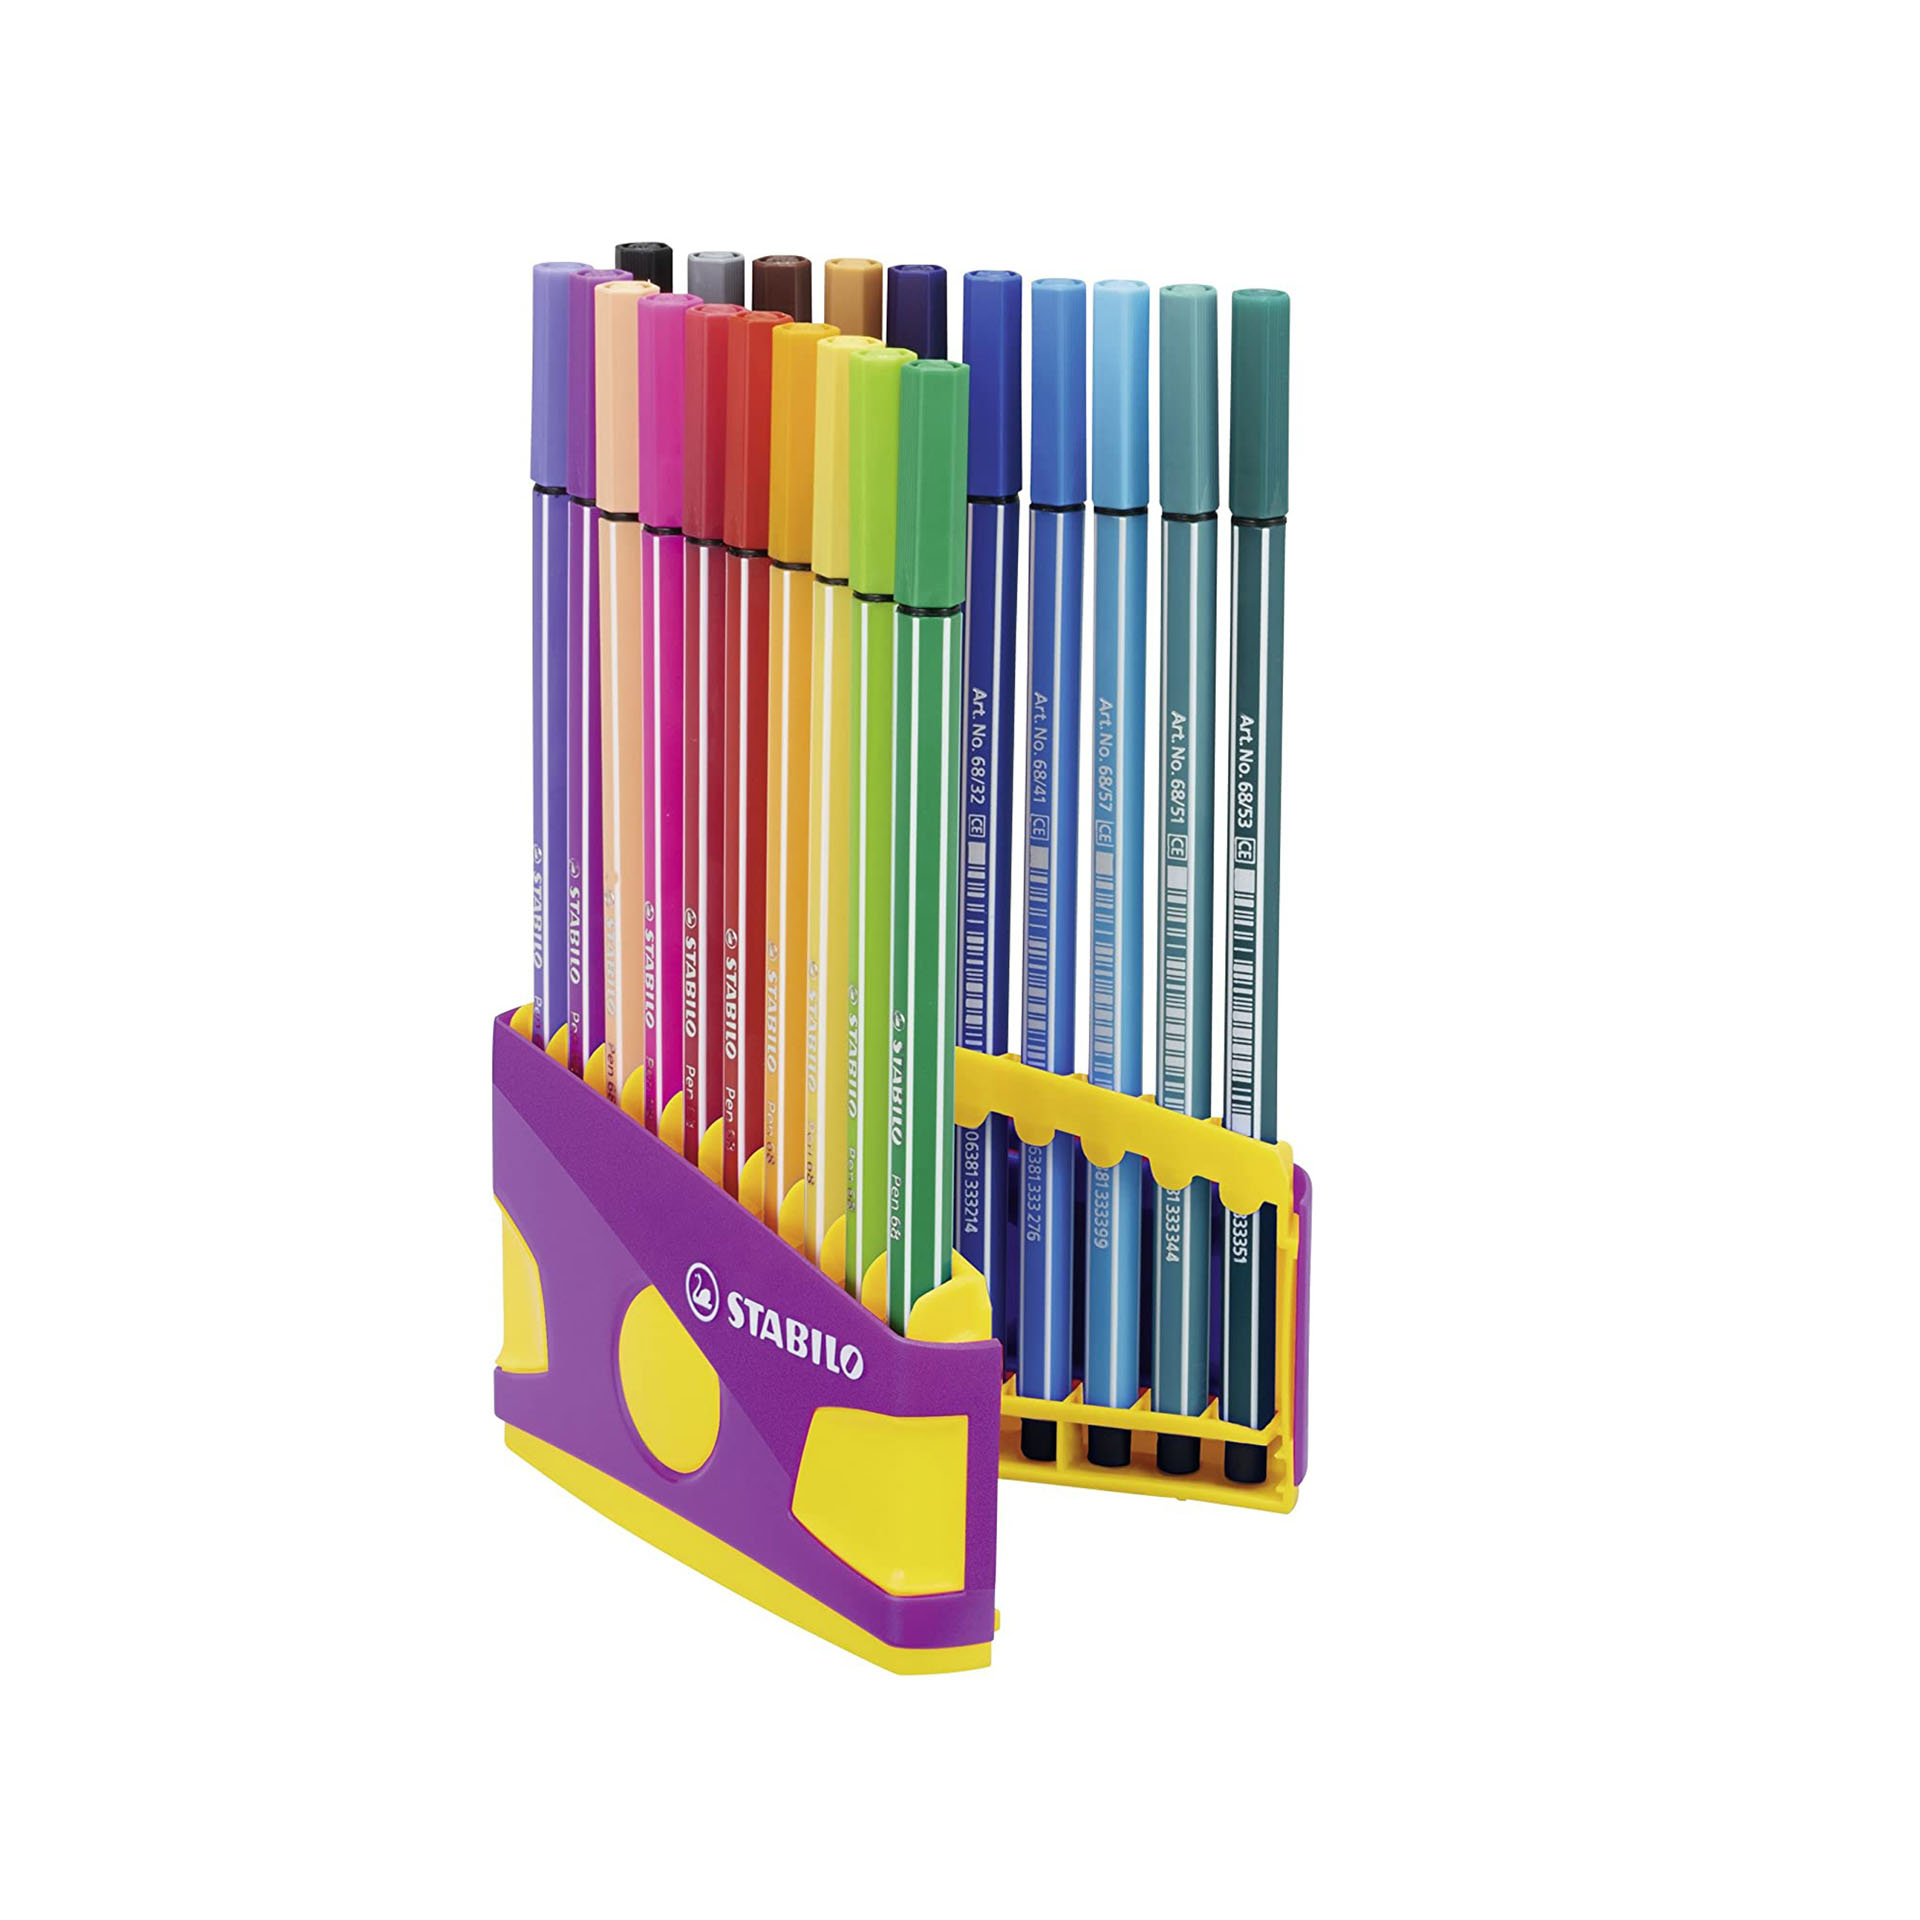 STABILO Pen 68 Colorparade in Lilla - Astuccio da 20 - Colori assortiti, , large